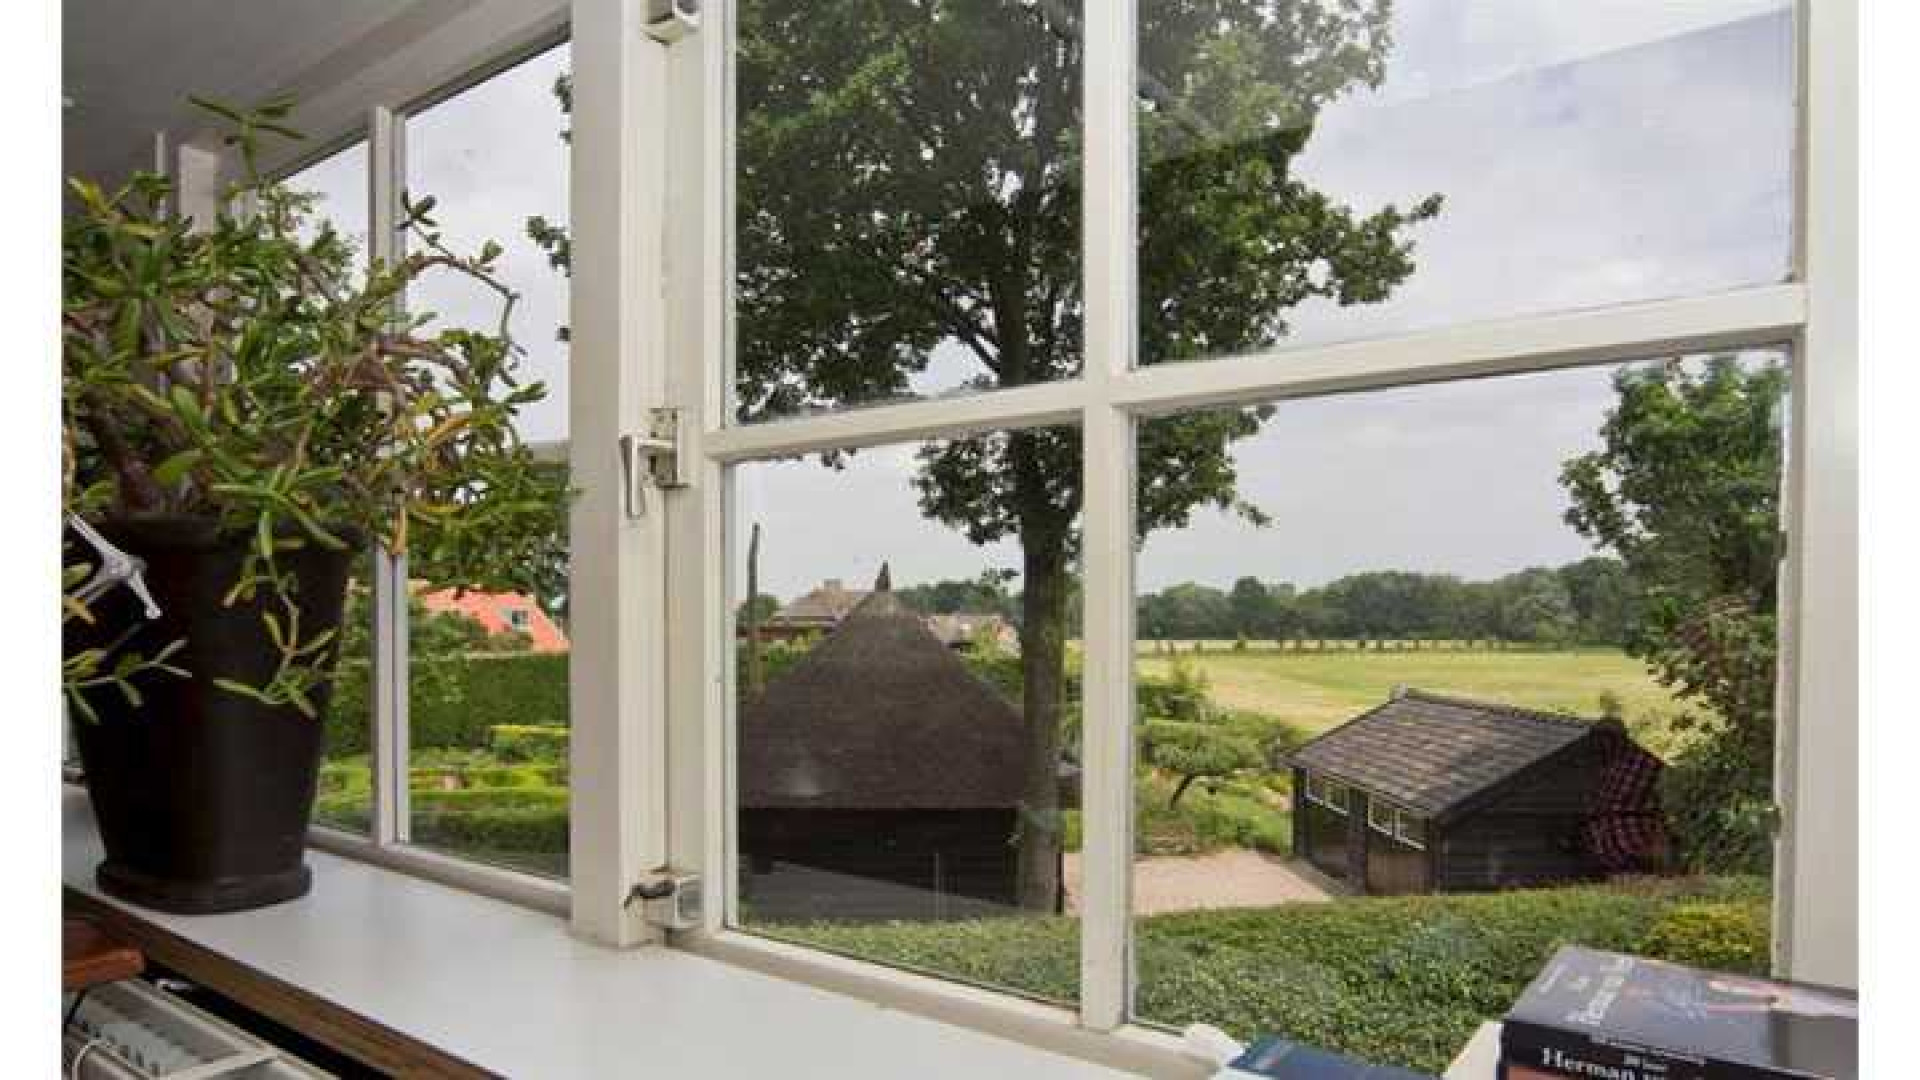 Herman van Veen verlaagt vraagprijs van zijn huis. Zie foto's 12